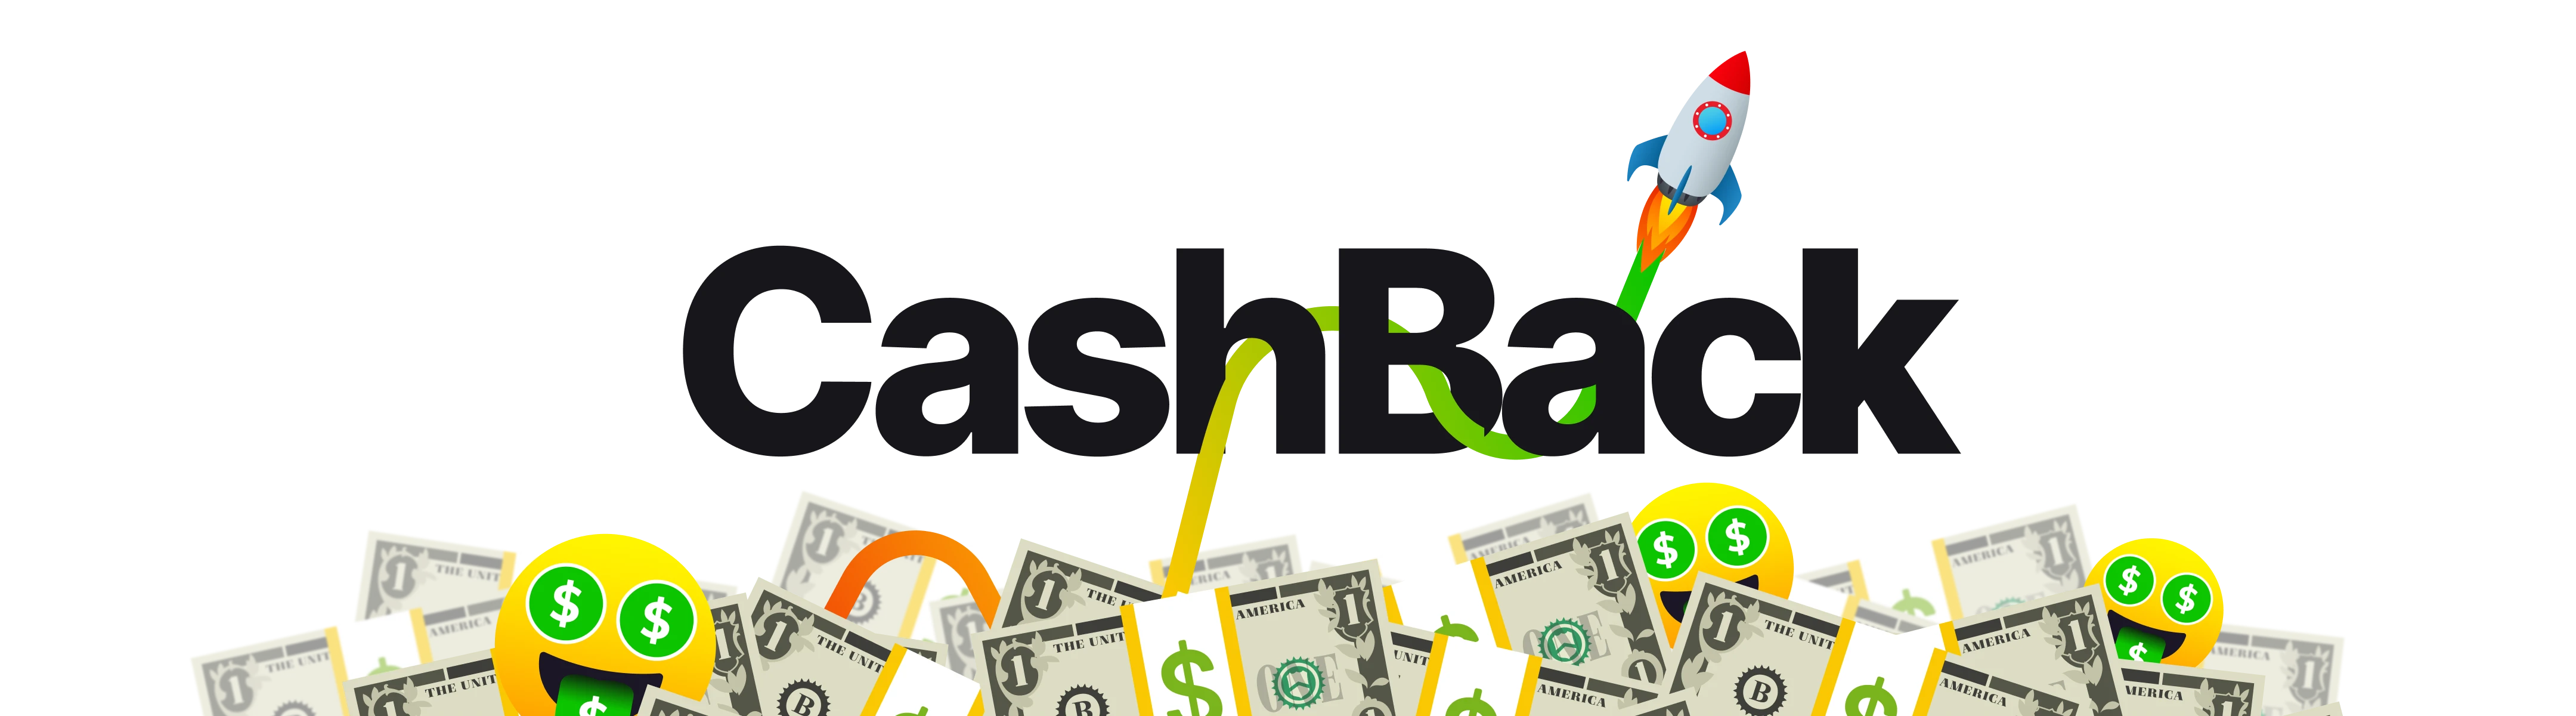 Cashback-Hero-Graphic